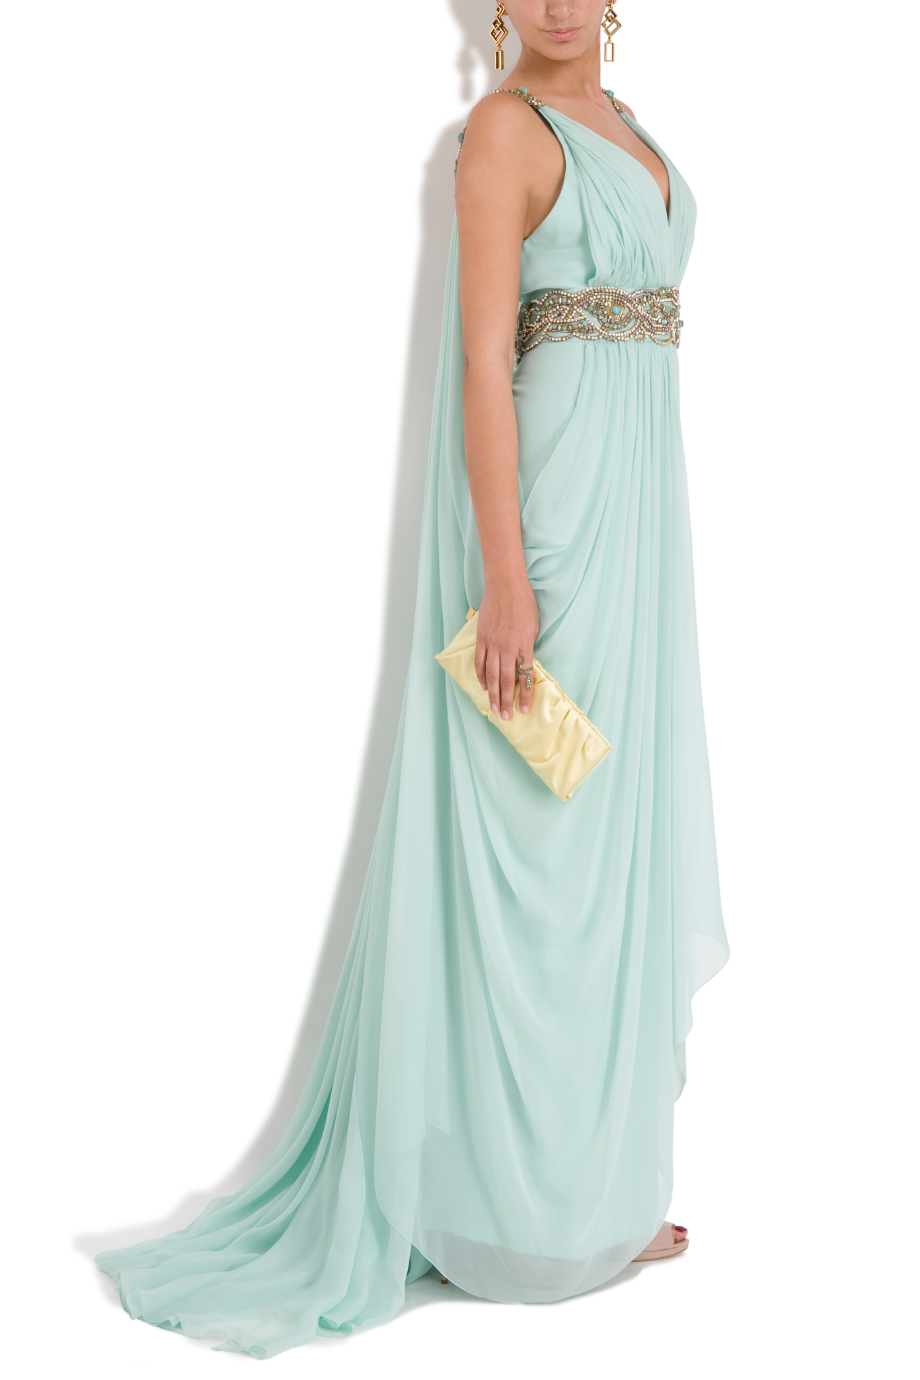 Lyst - Marchesa Chiffon Embellished Grecian Gown in Blue